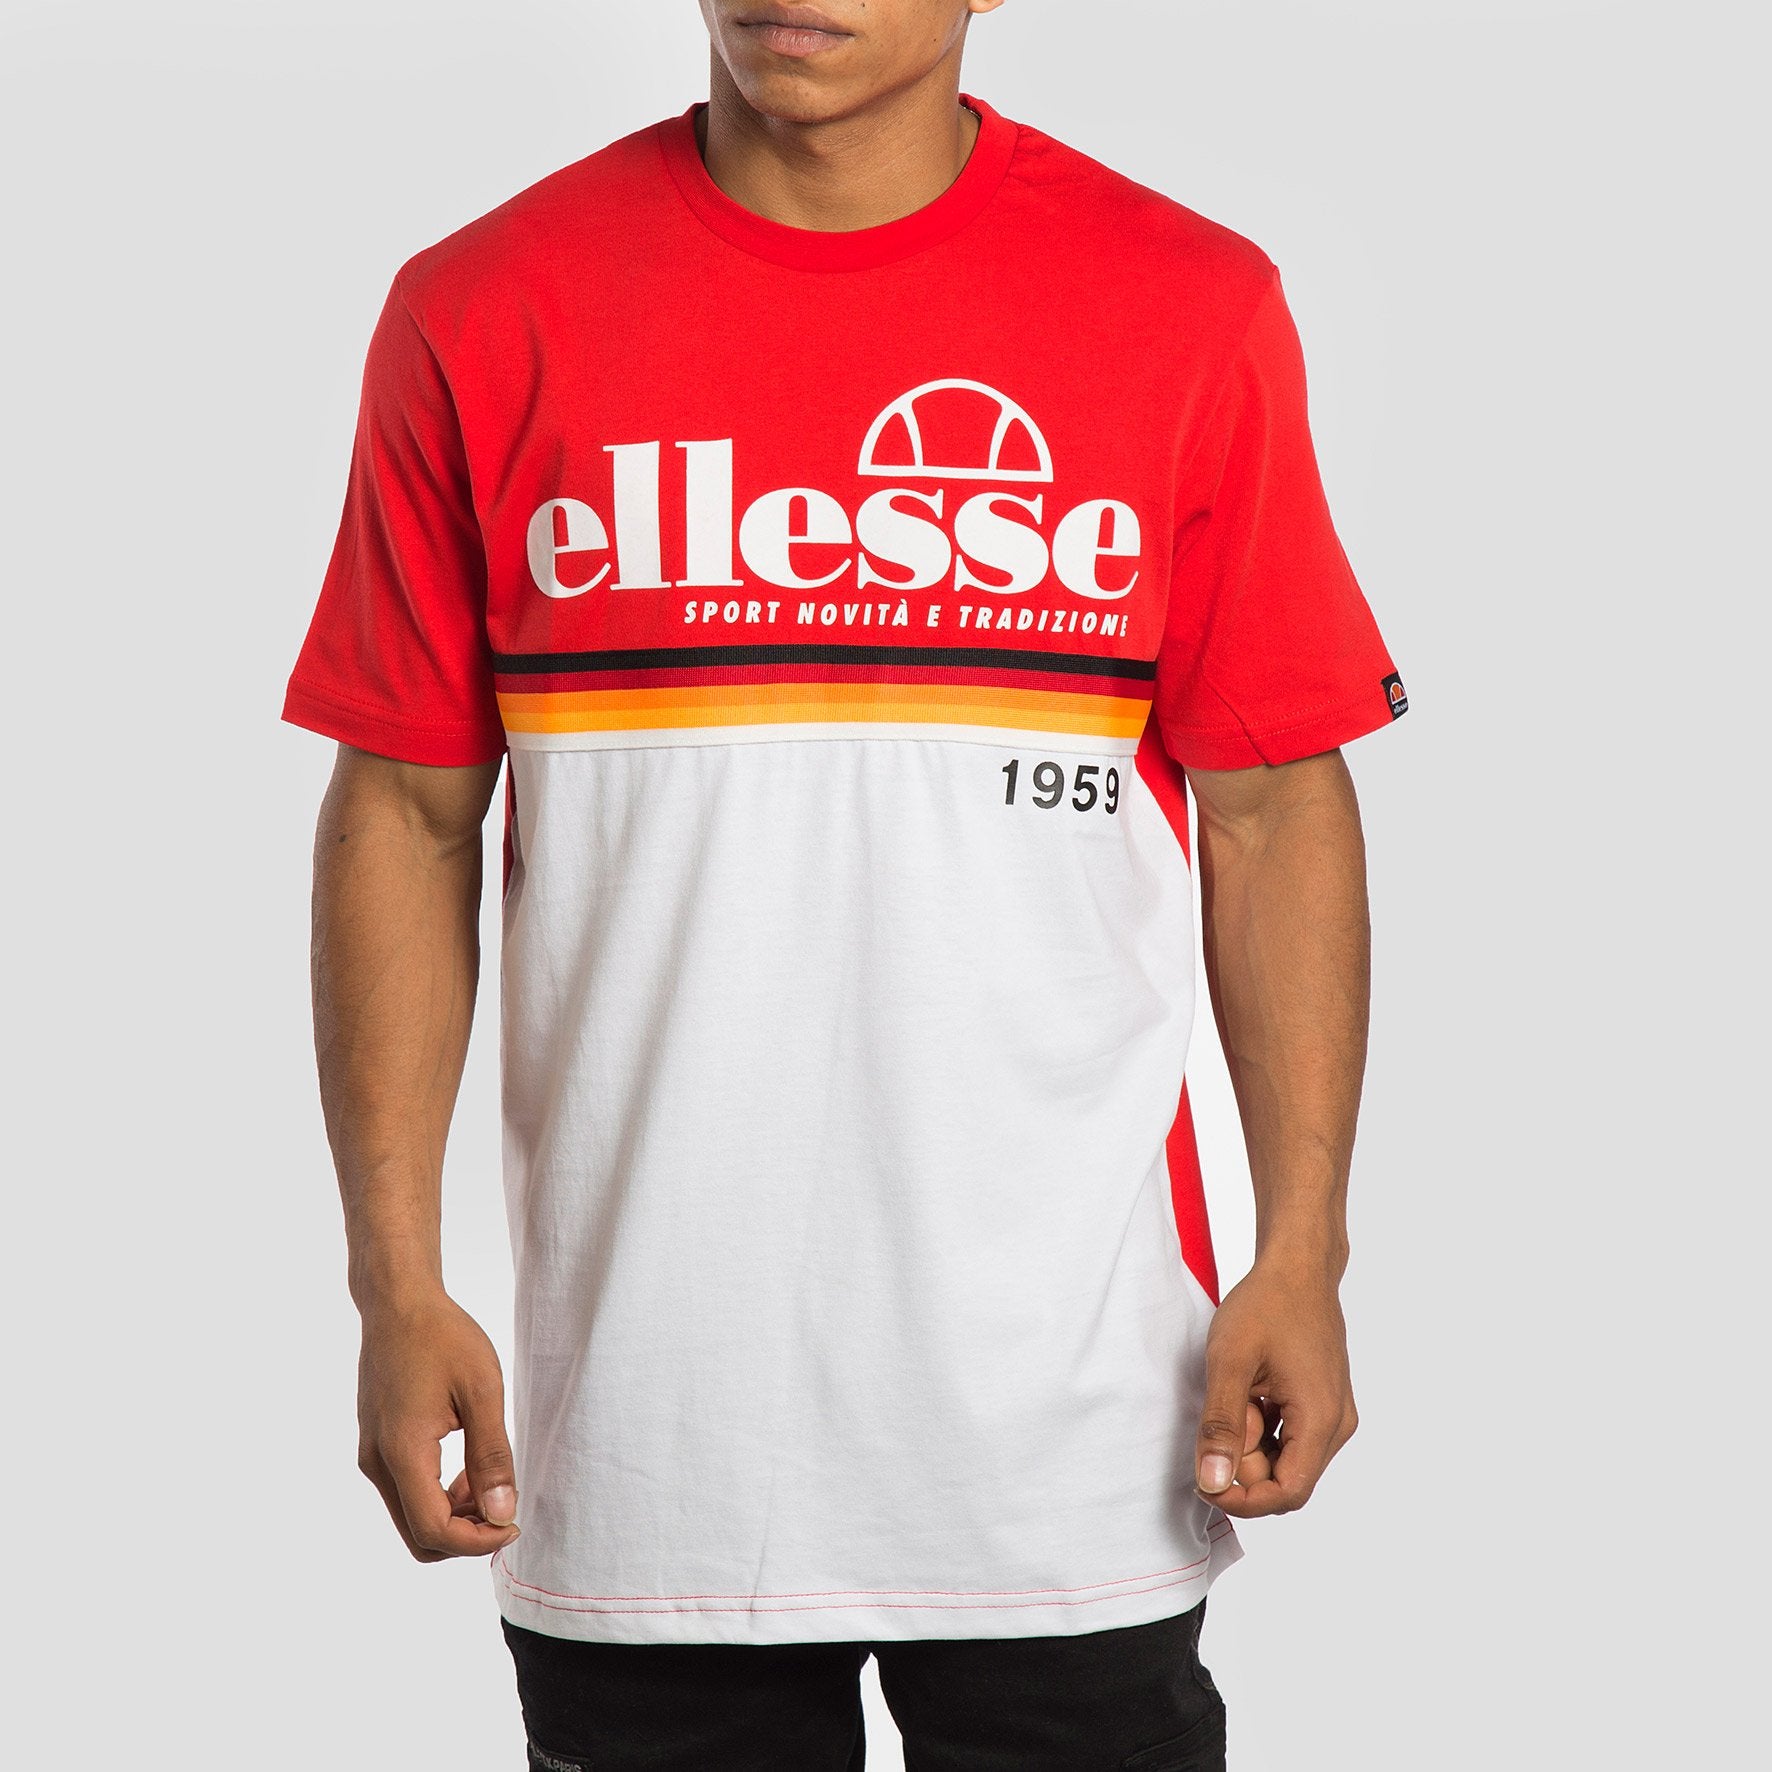 Ellesse Camiseta Brescia Red - SHD08104 - Colección Chico